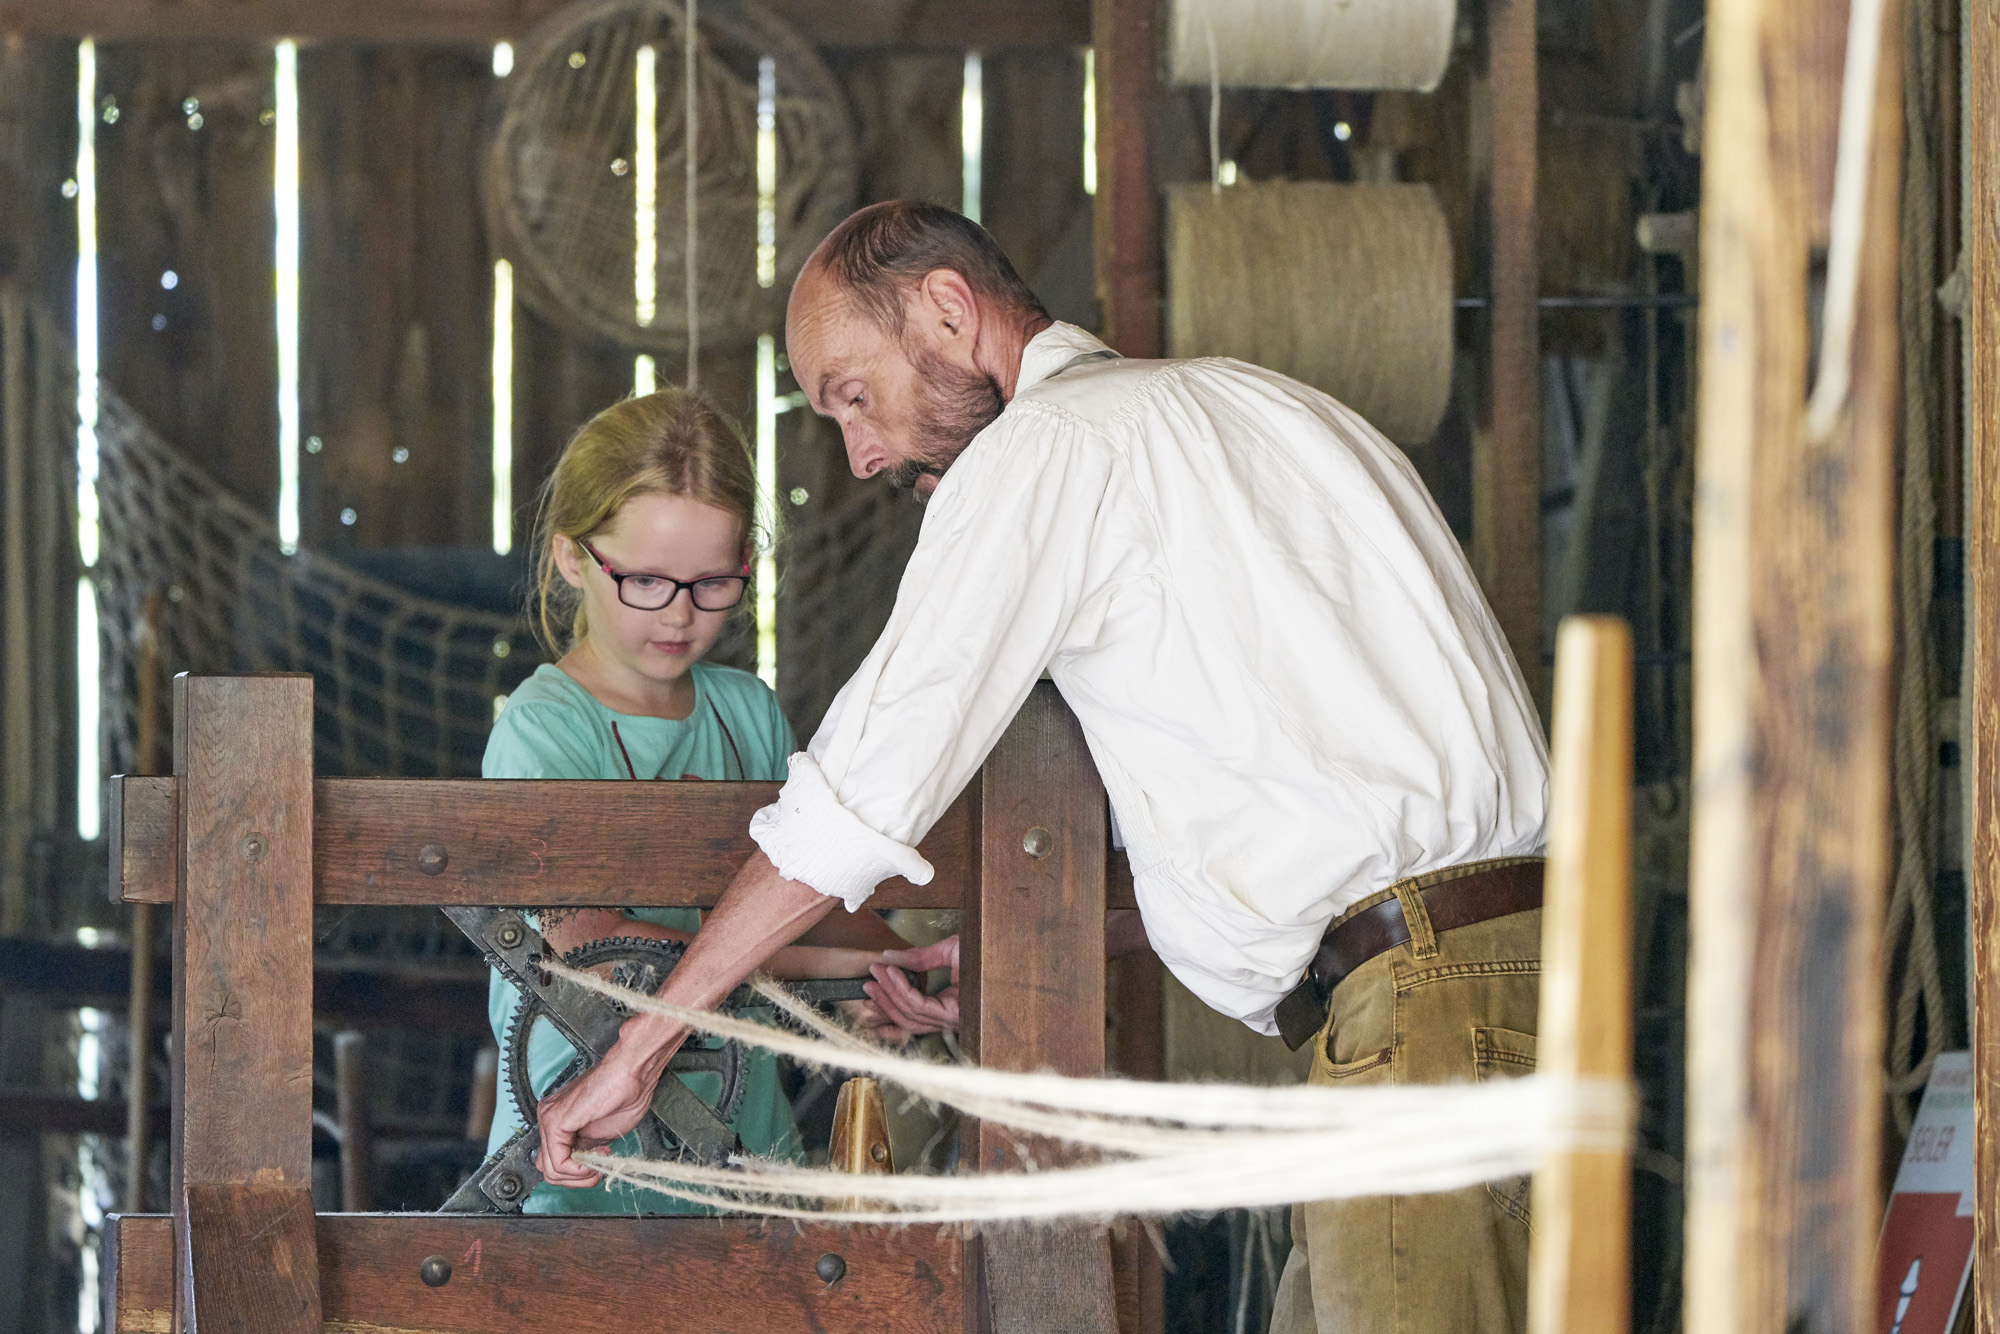 Der Vorführhandwerker stellt gemeinsam mit einem Mädchen ein Seil her. Das Mädchen kurbelt und der Seiler führt die einzelnen Stränge zu einem Seil zusammen.